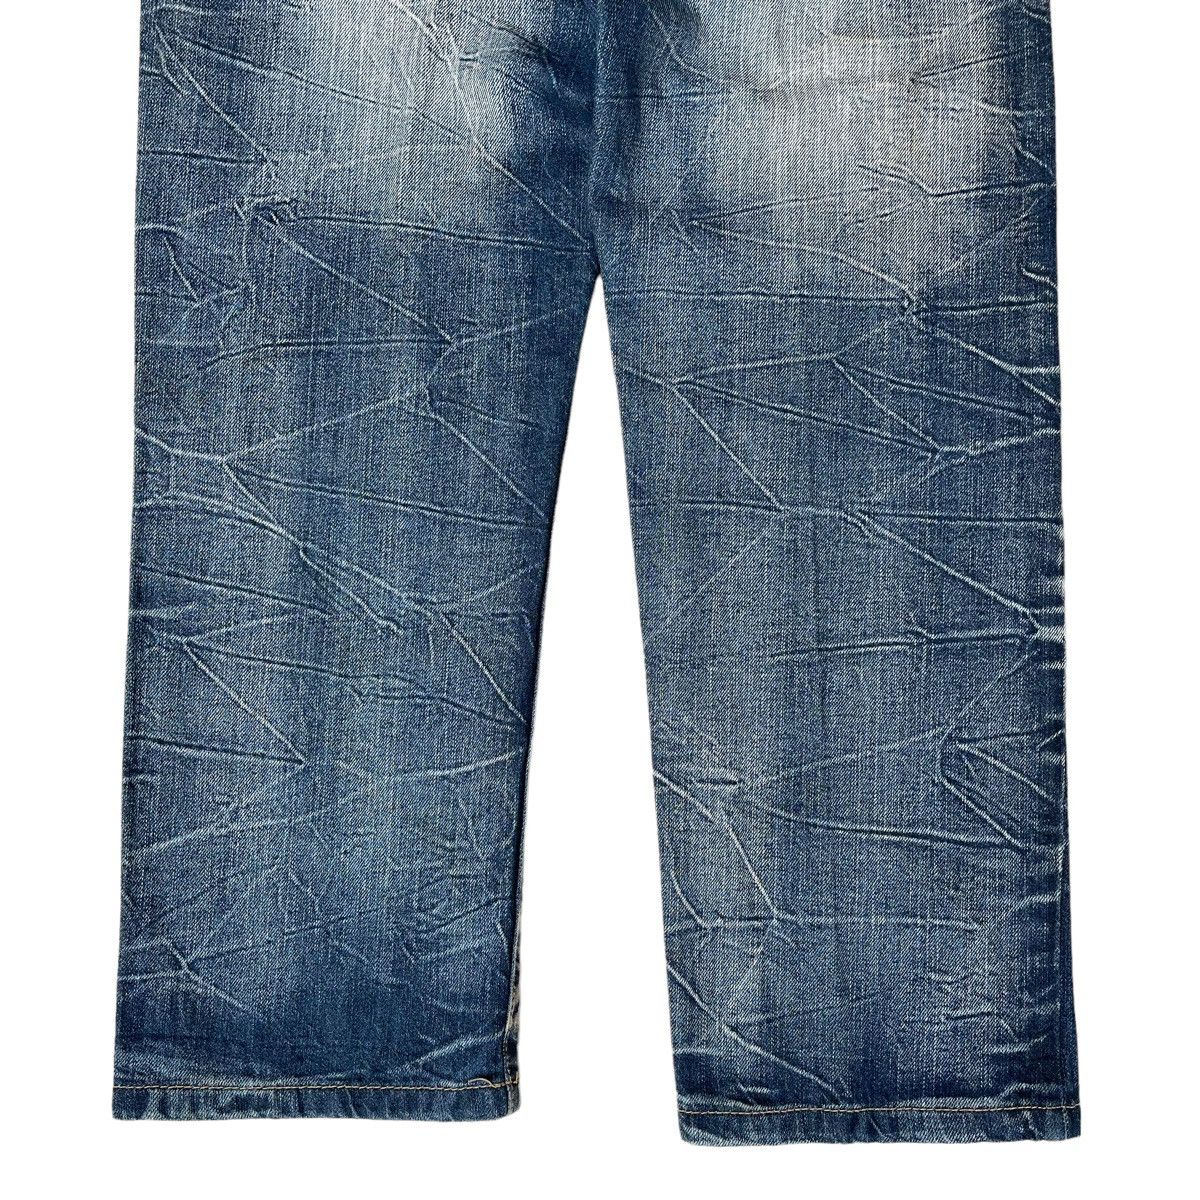 Japanase Unbrand Denim Flare Jeans 30 - 8